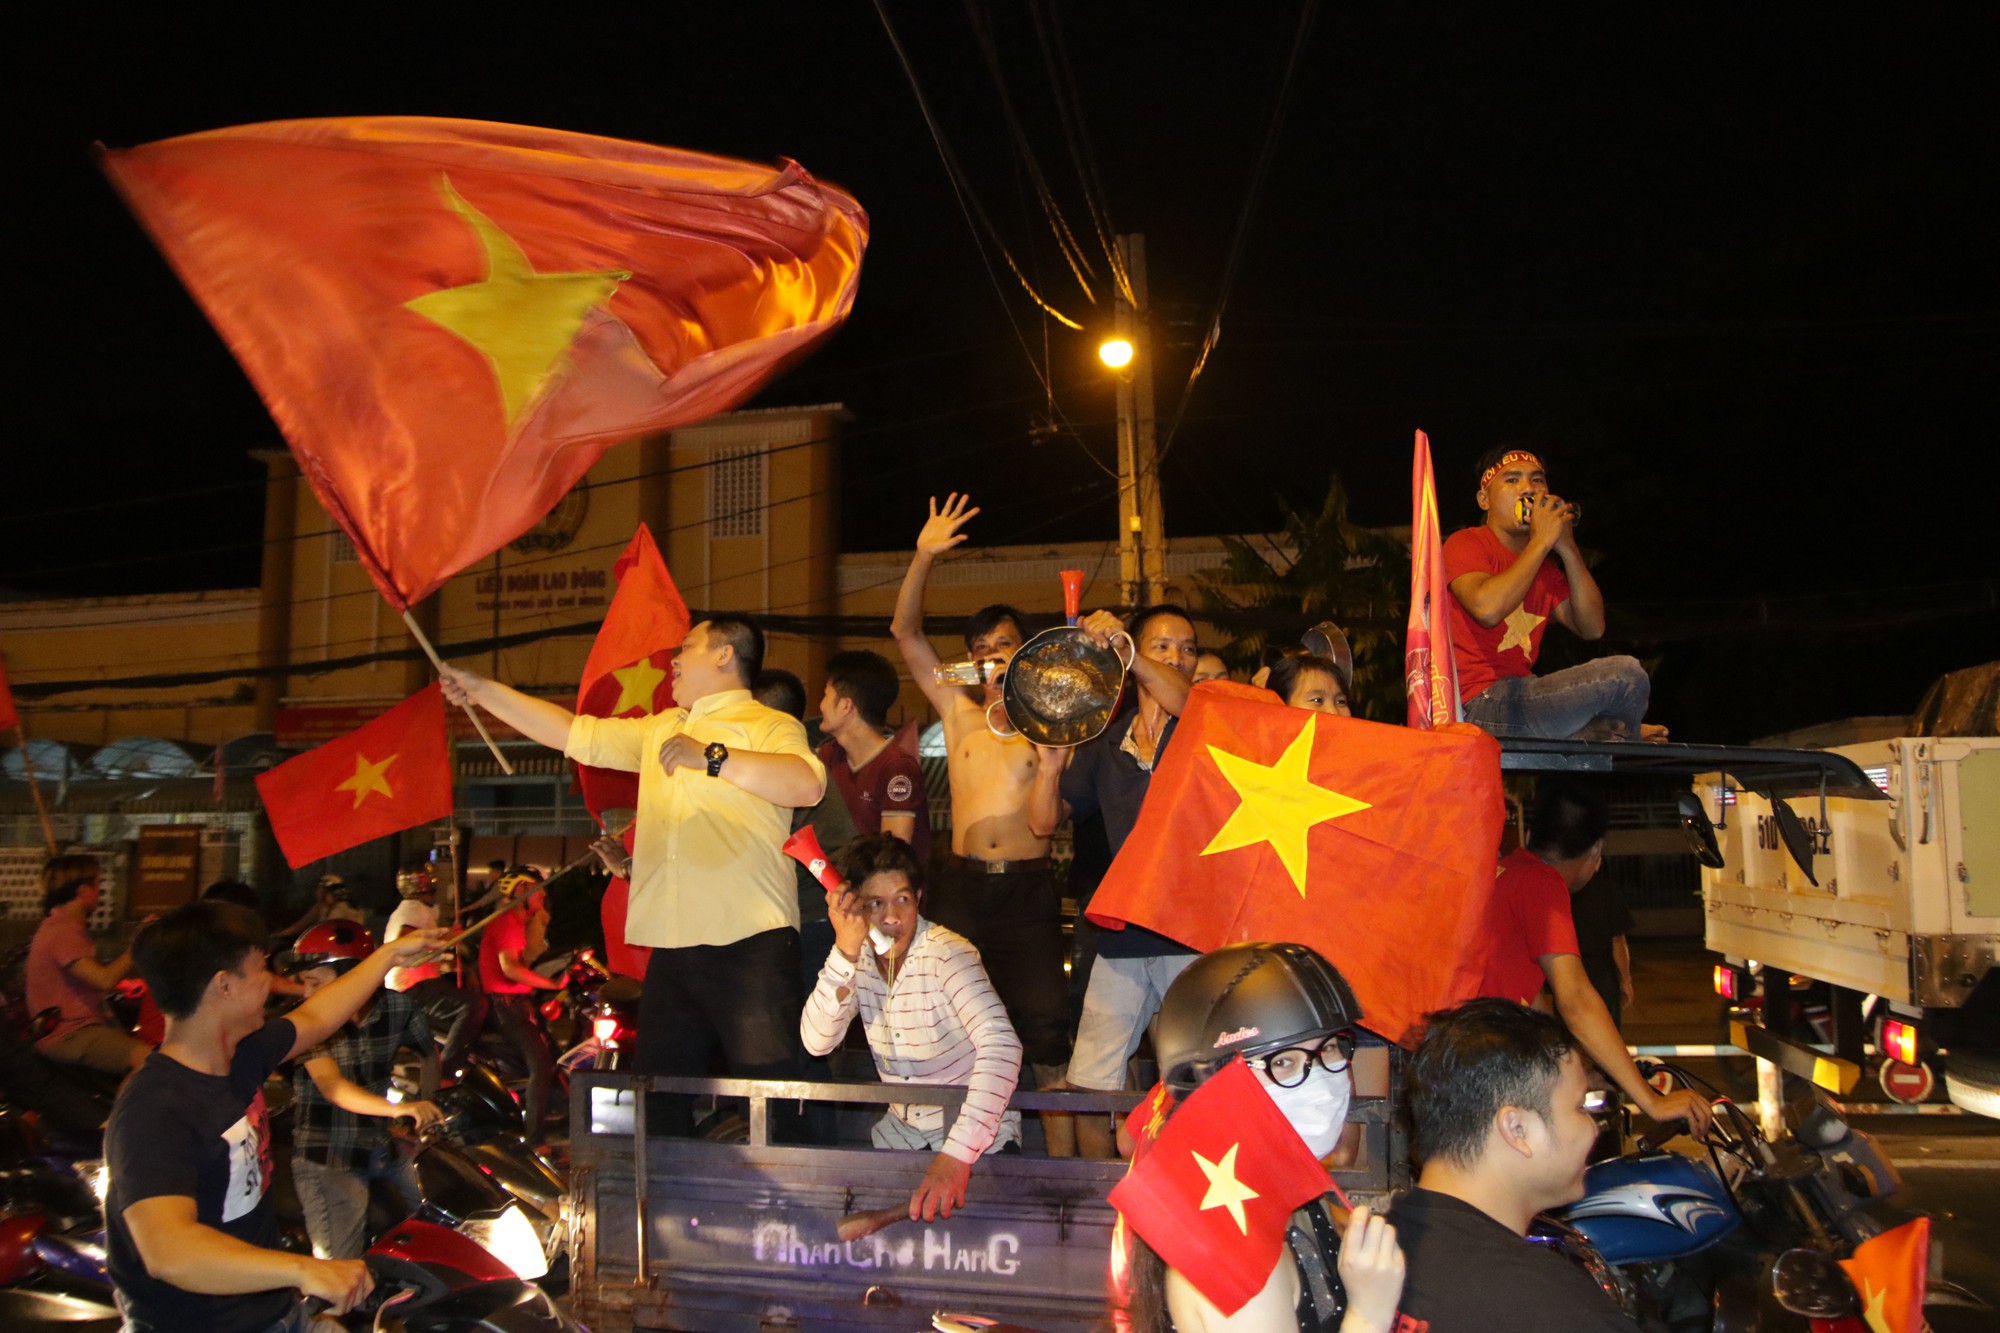 U23 Việt Nam: Những hình ảnh đẹp tuyệt vời về đội tuyển U23 Việt Nam chắc chắn sẽ khiến bất kỳ fan bóng đá nào cũng thích thú. Hãy cùng xem lại những khoảnh khắc đáng nhớ của đội tuyển này trong giải U23 Châu Á năm